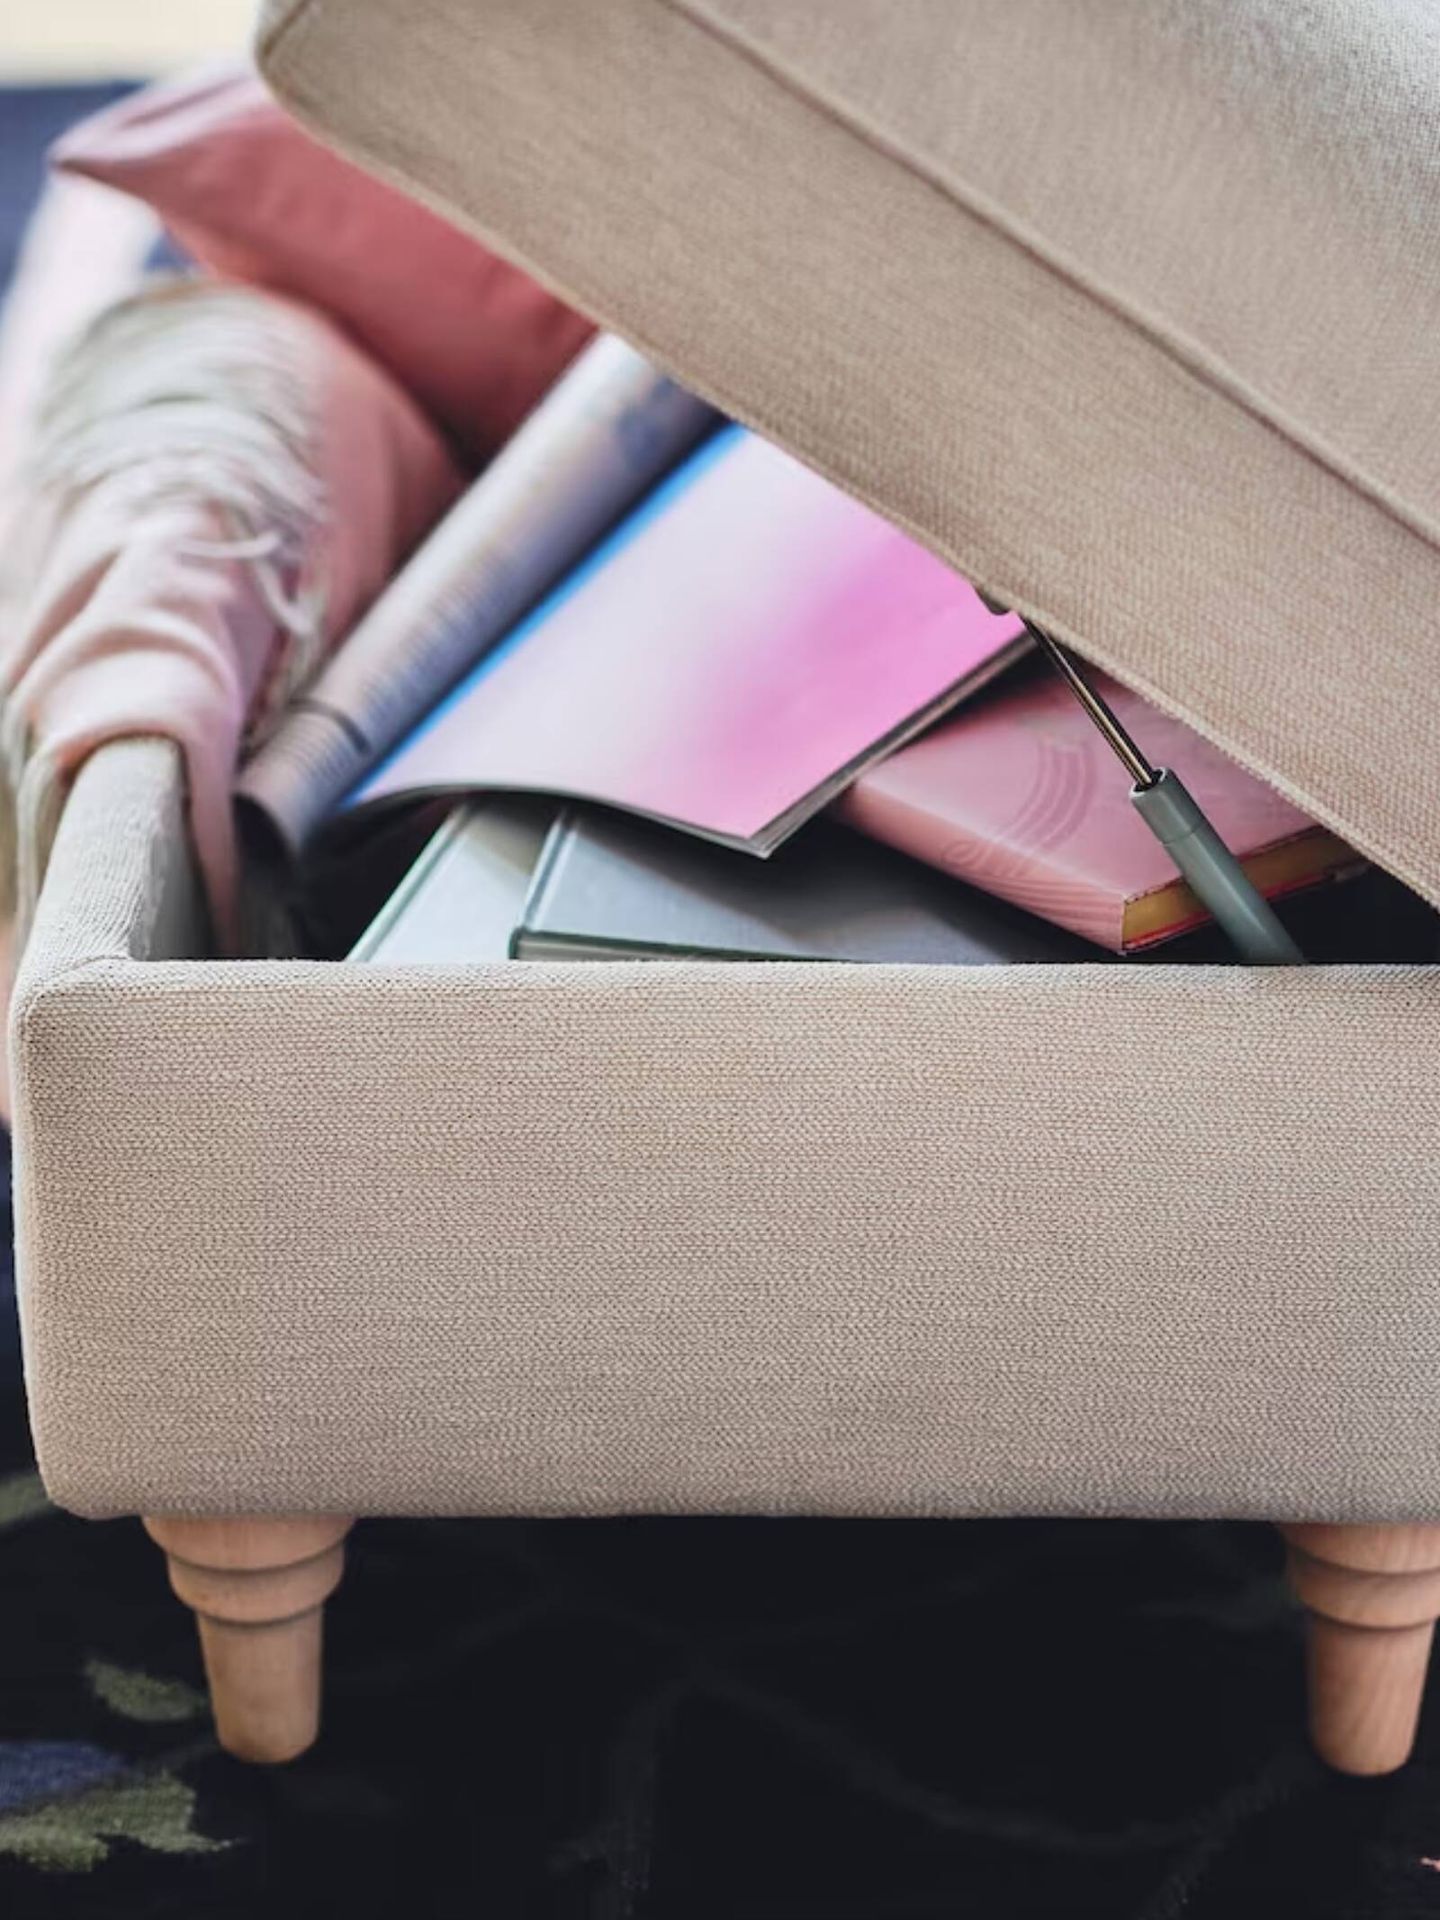 Ordena tu casa con el nuevo banco de Ikea, un mueble ideal para todos los hogares. (Cortesía/Ikea)